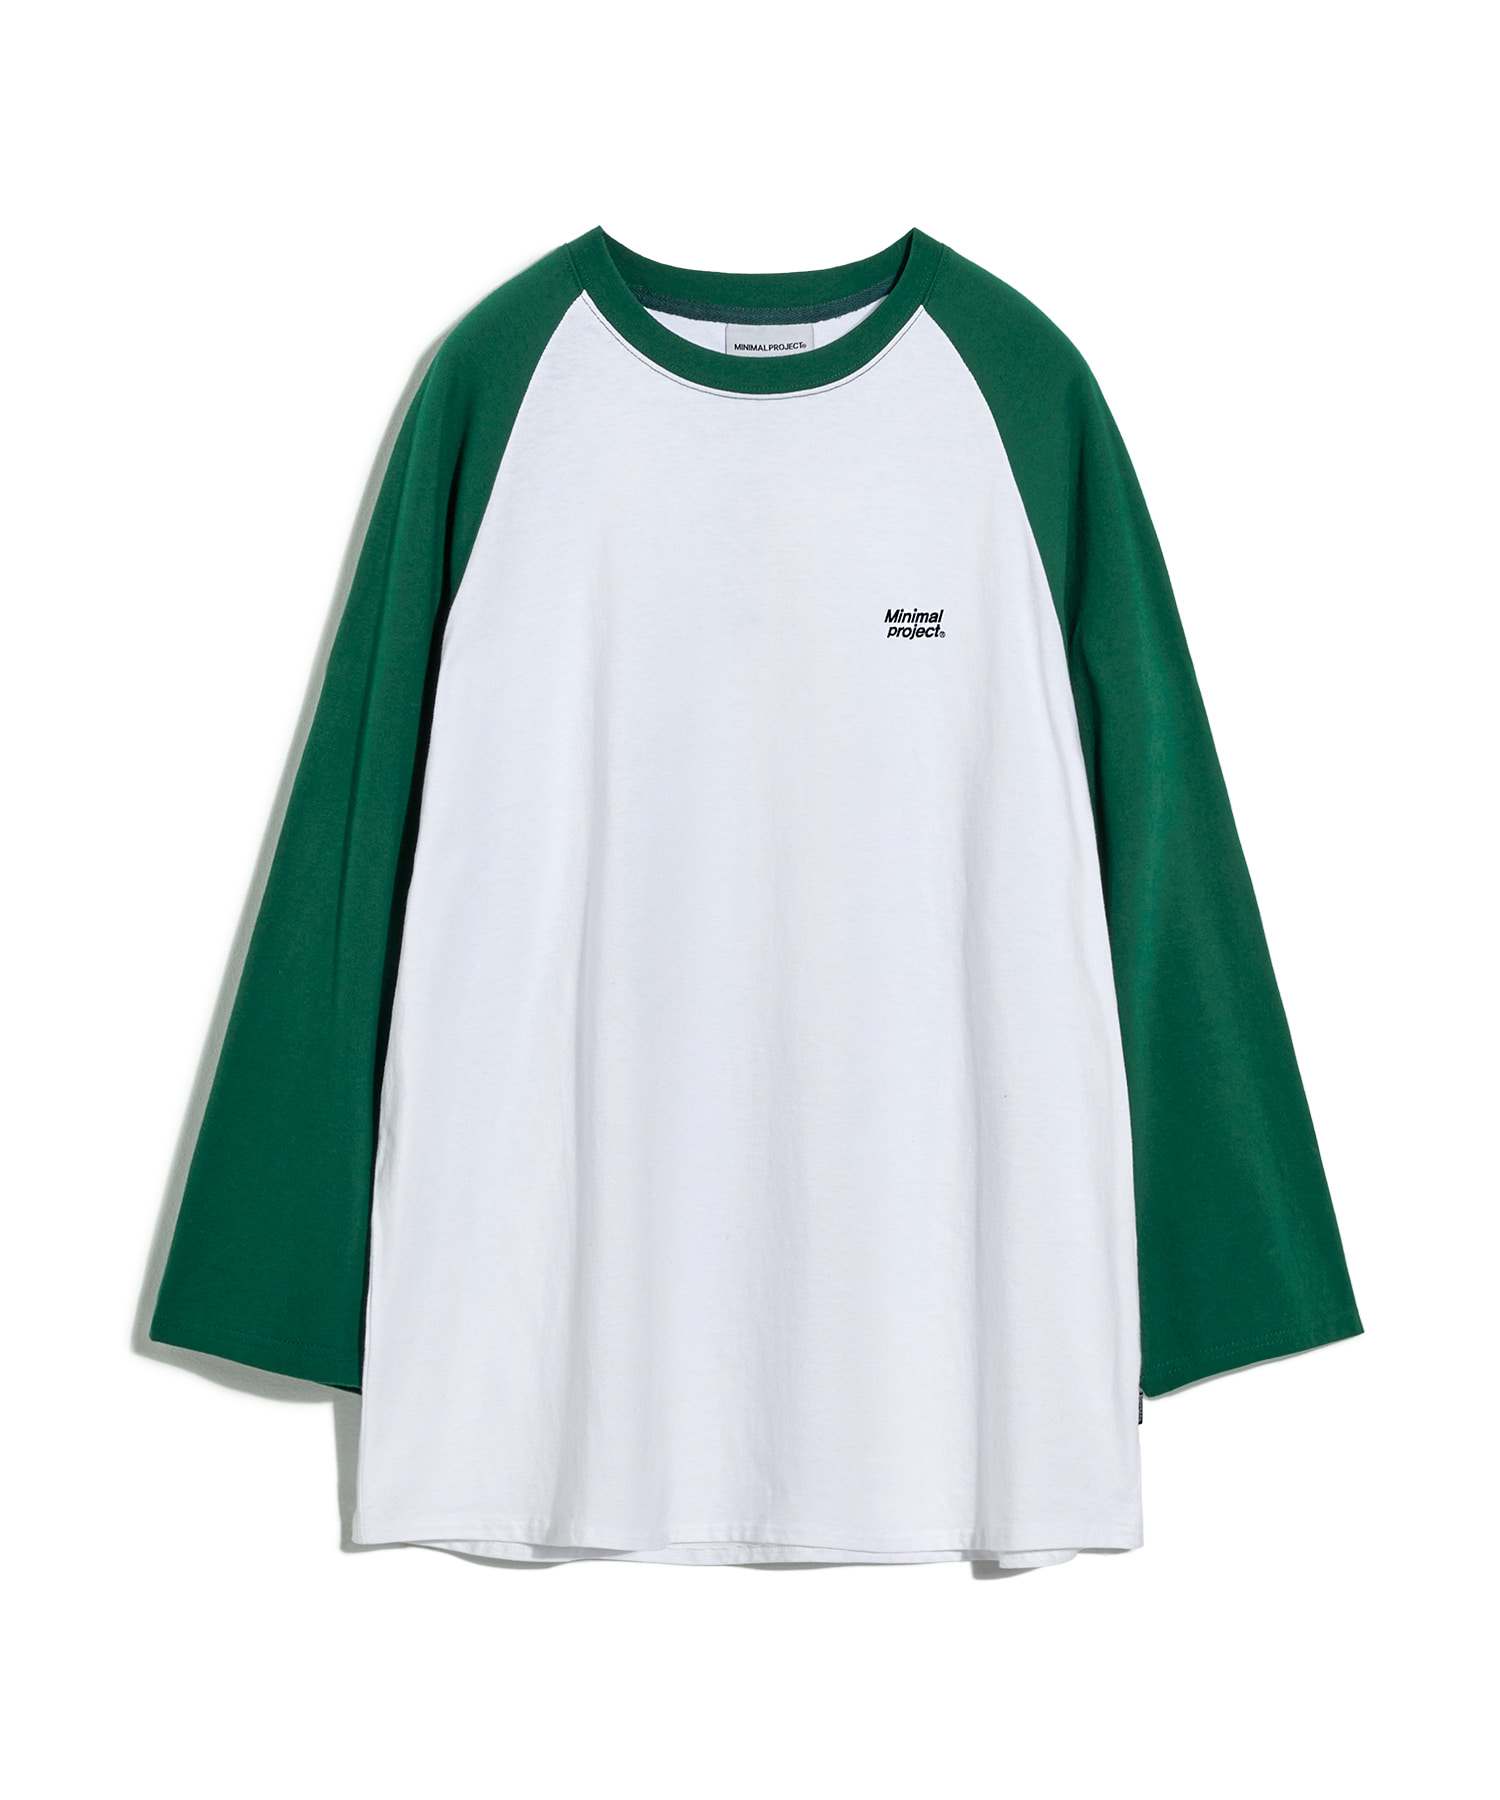 래글런 긴팔 티셔츠 MLT113 [GREEN]